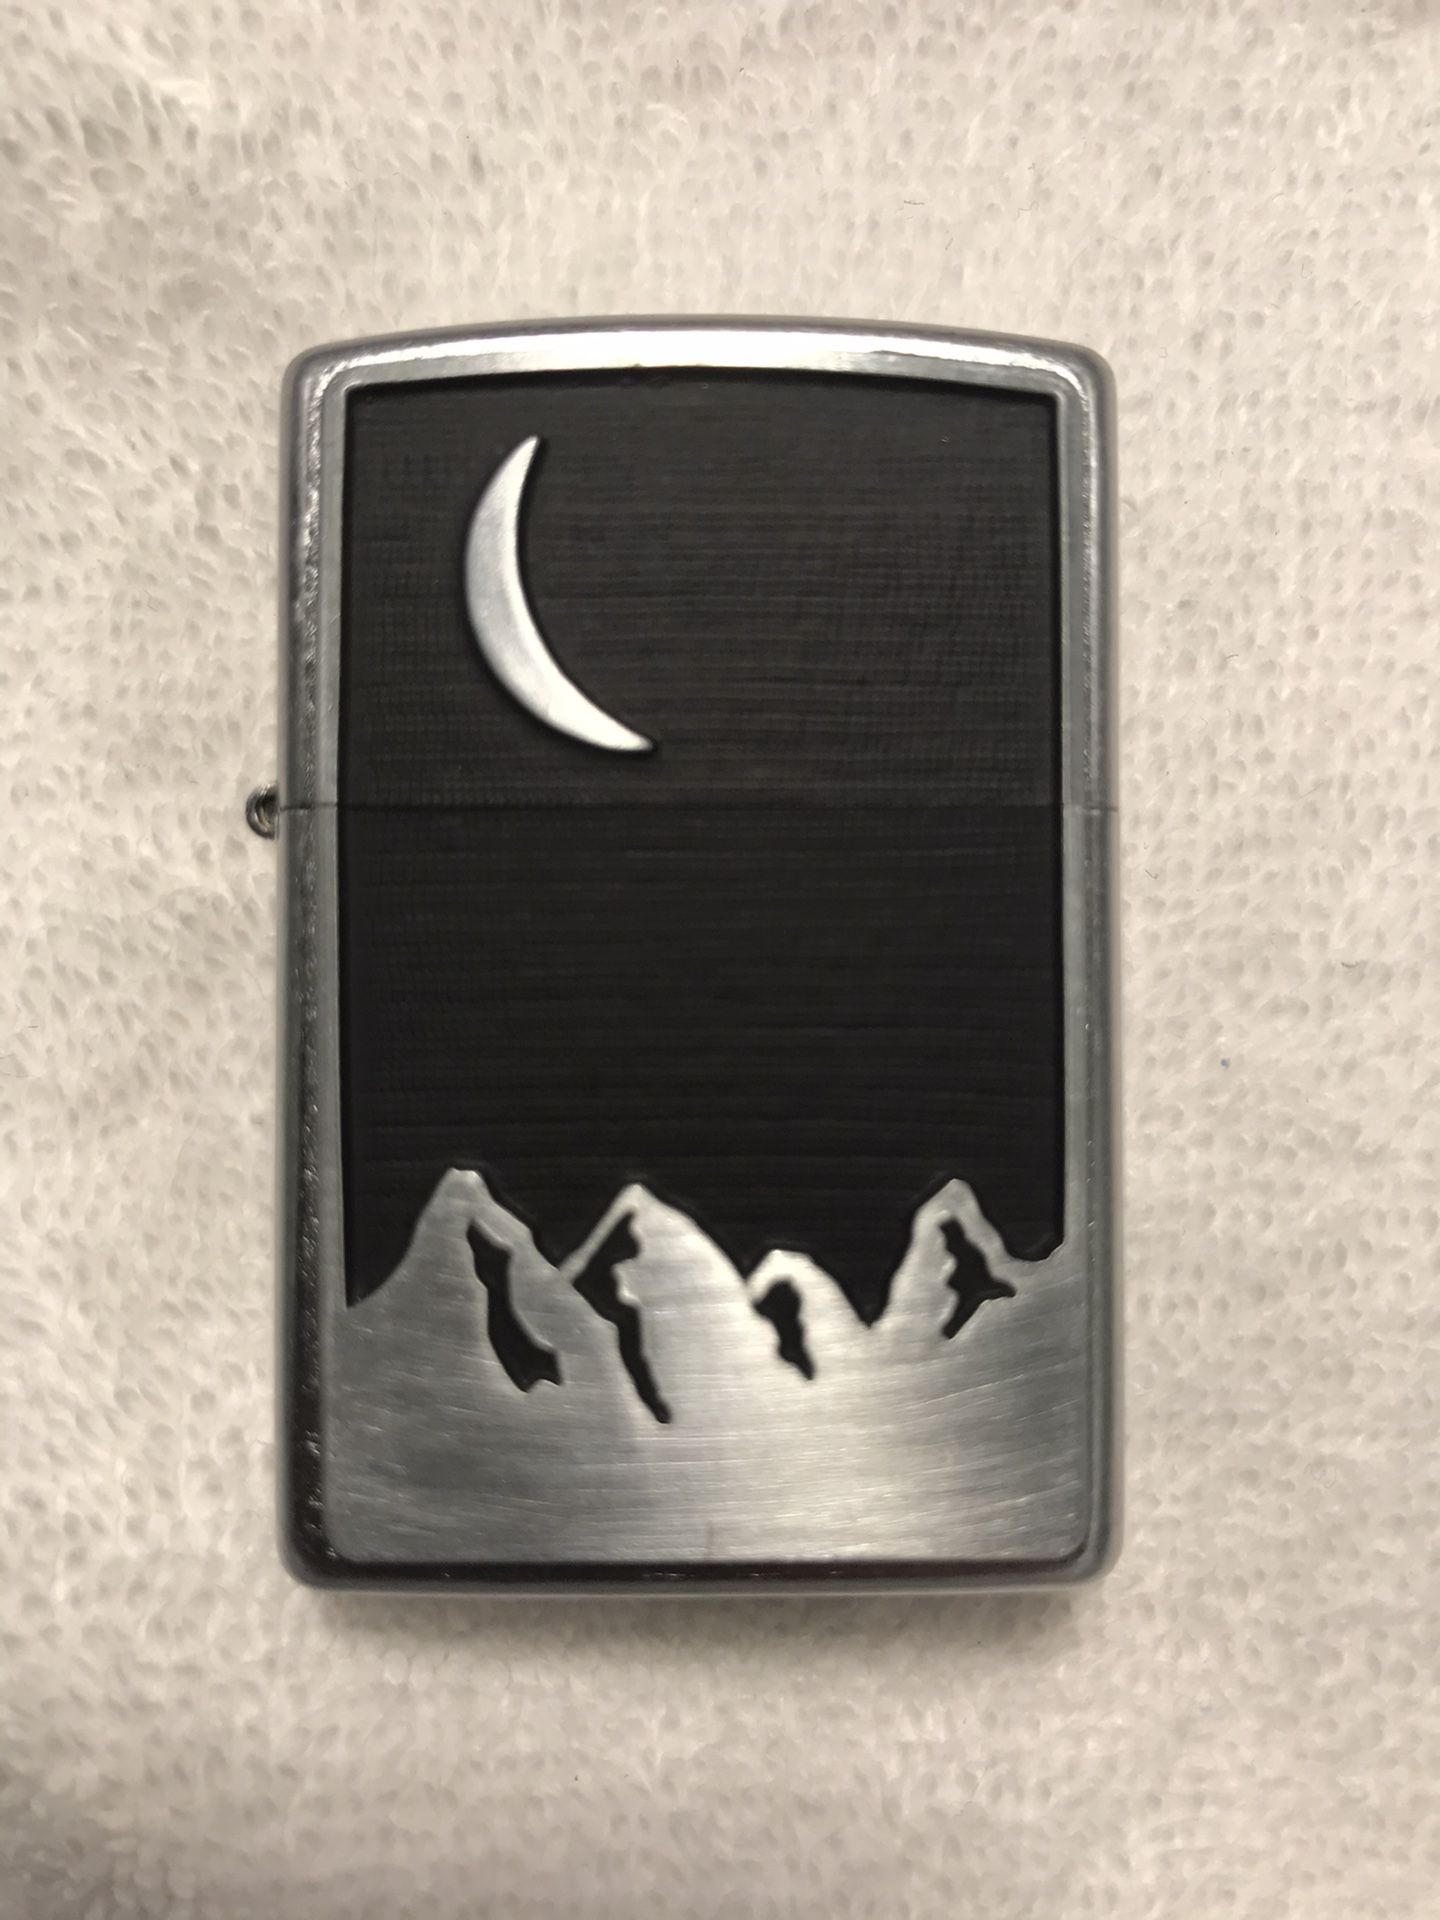 2000 Marlboro “Moon Over Mountains” Zippo Lighter